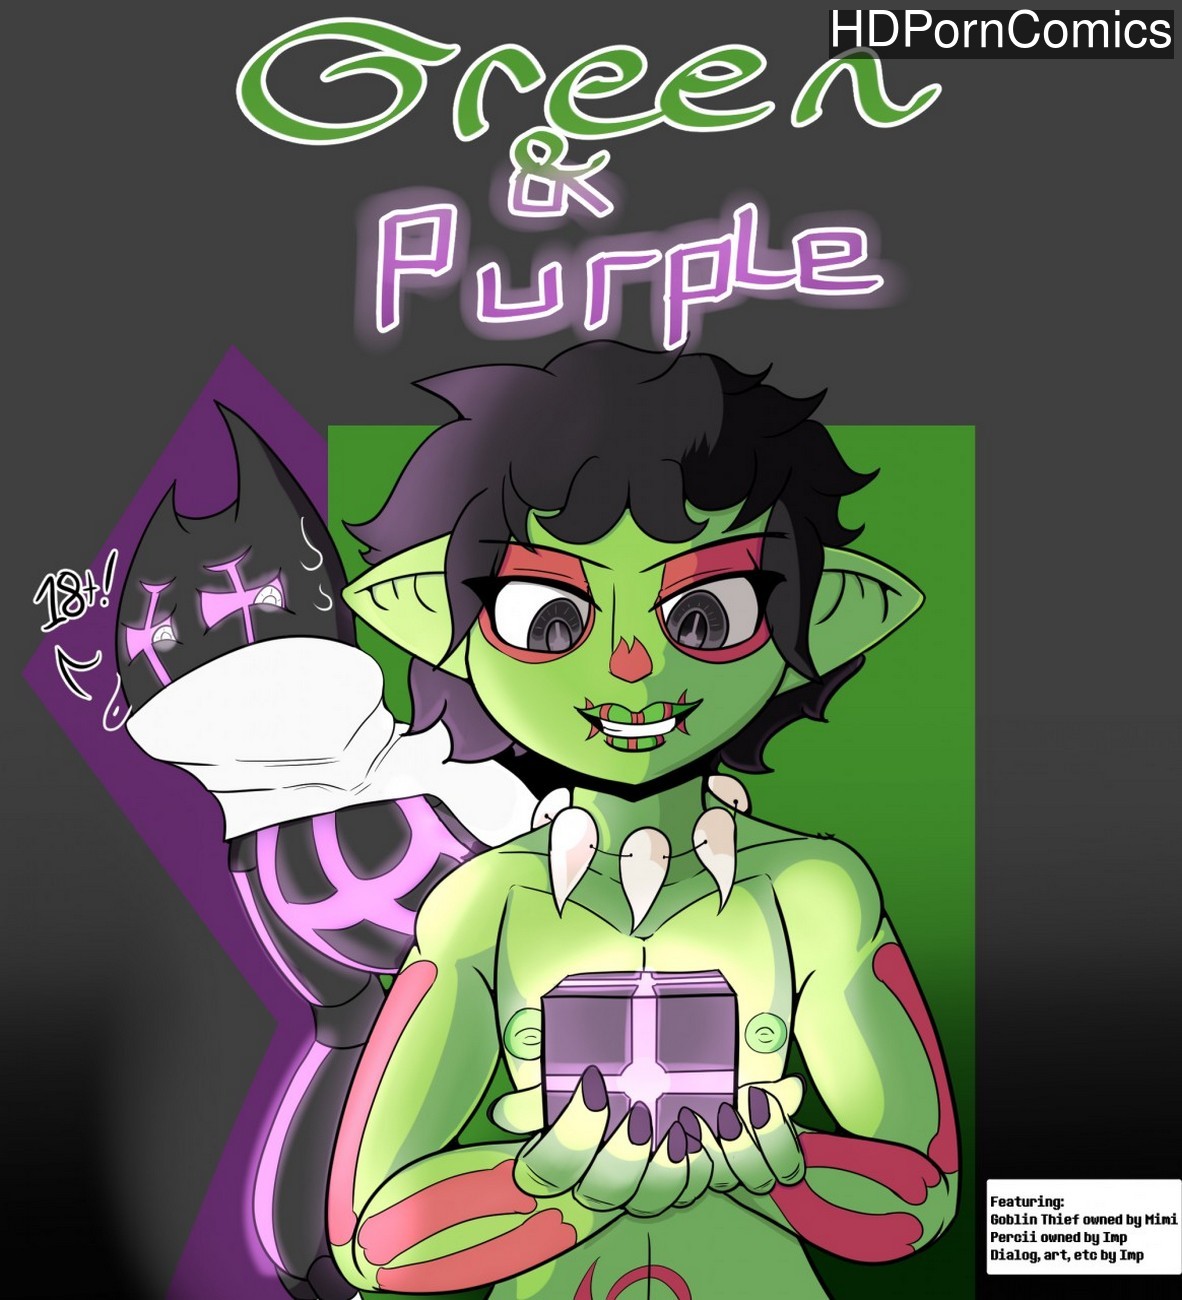 Green Sex Toons - Green & Purple comic porn - HD Porn Comics